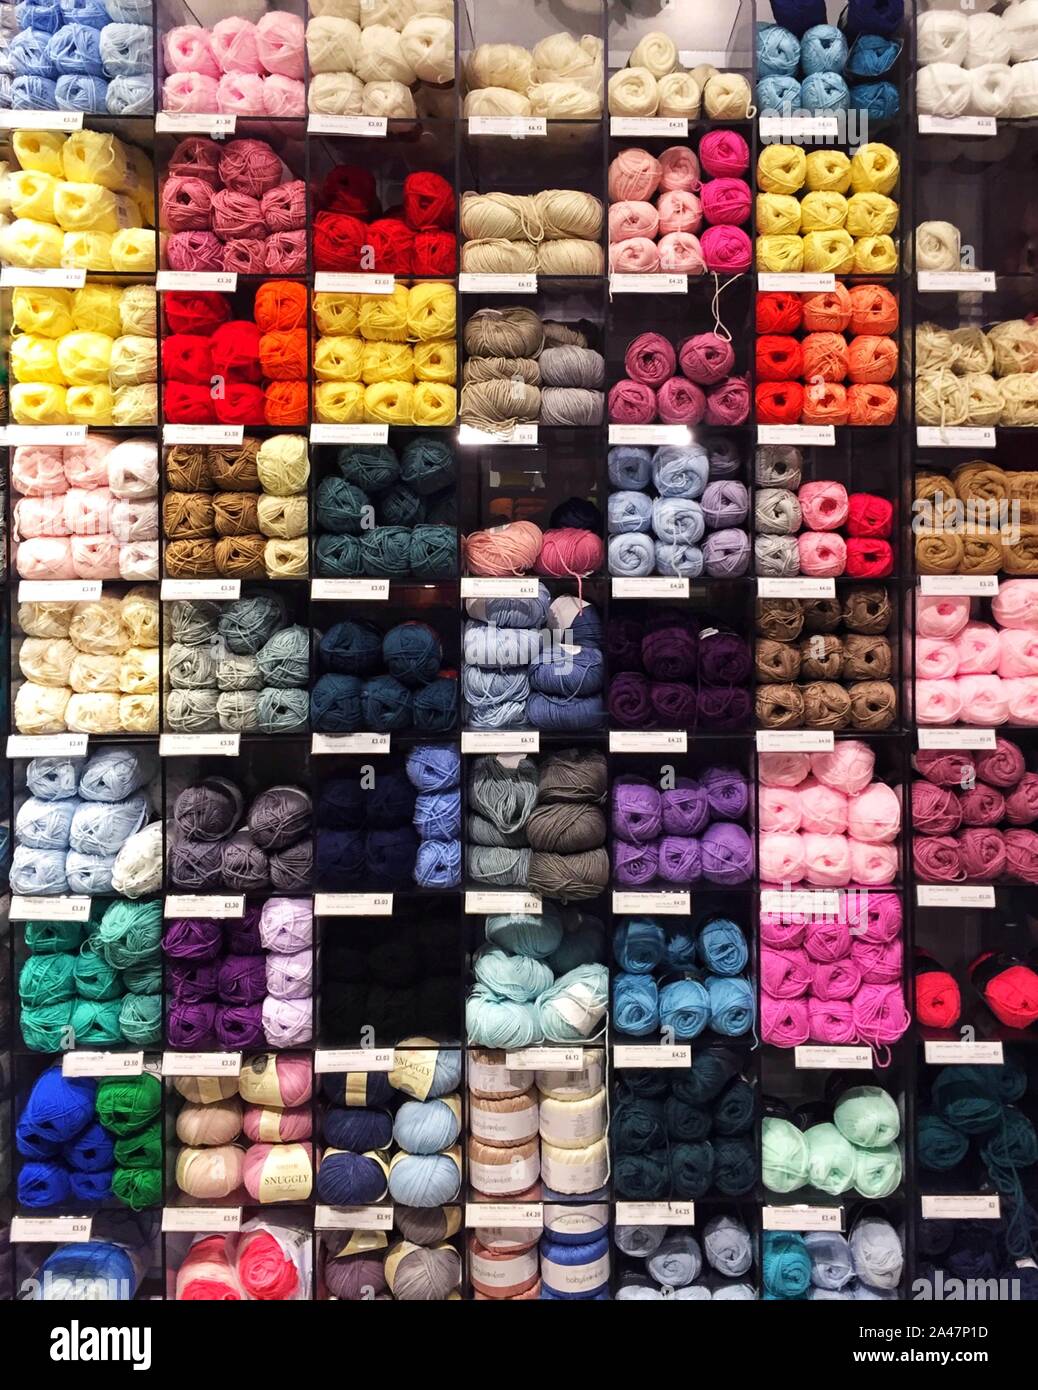 Die Regale eines Kurzwarenladens voller bunter Wolle und Garn Stockfoto